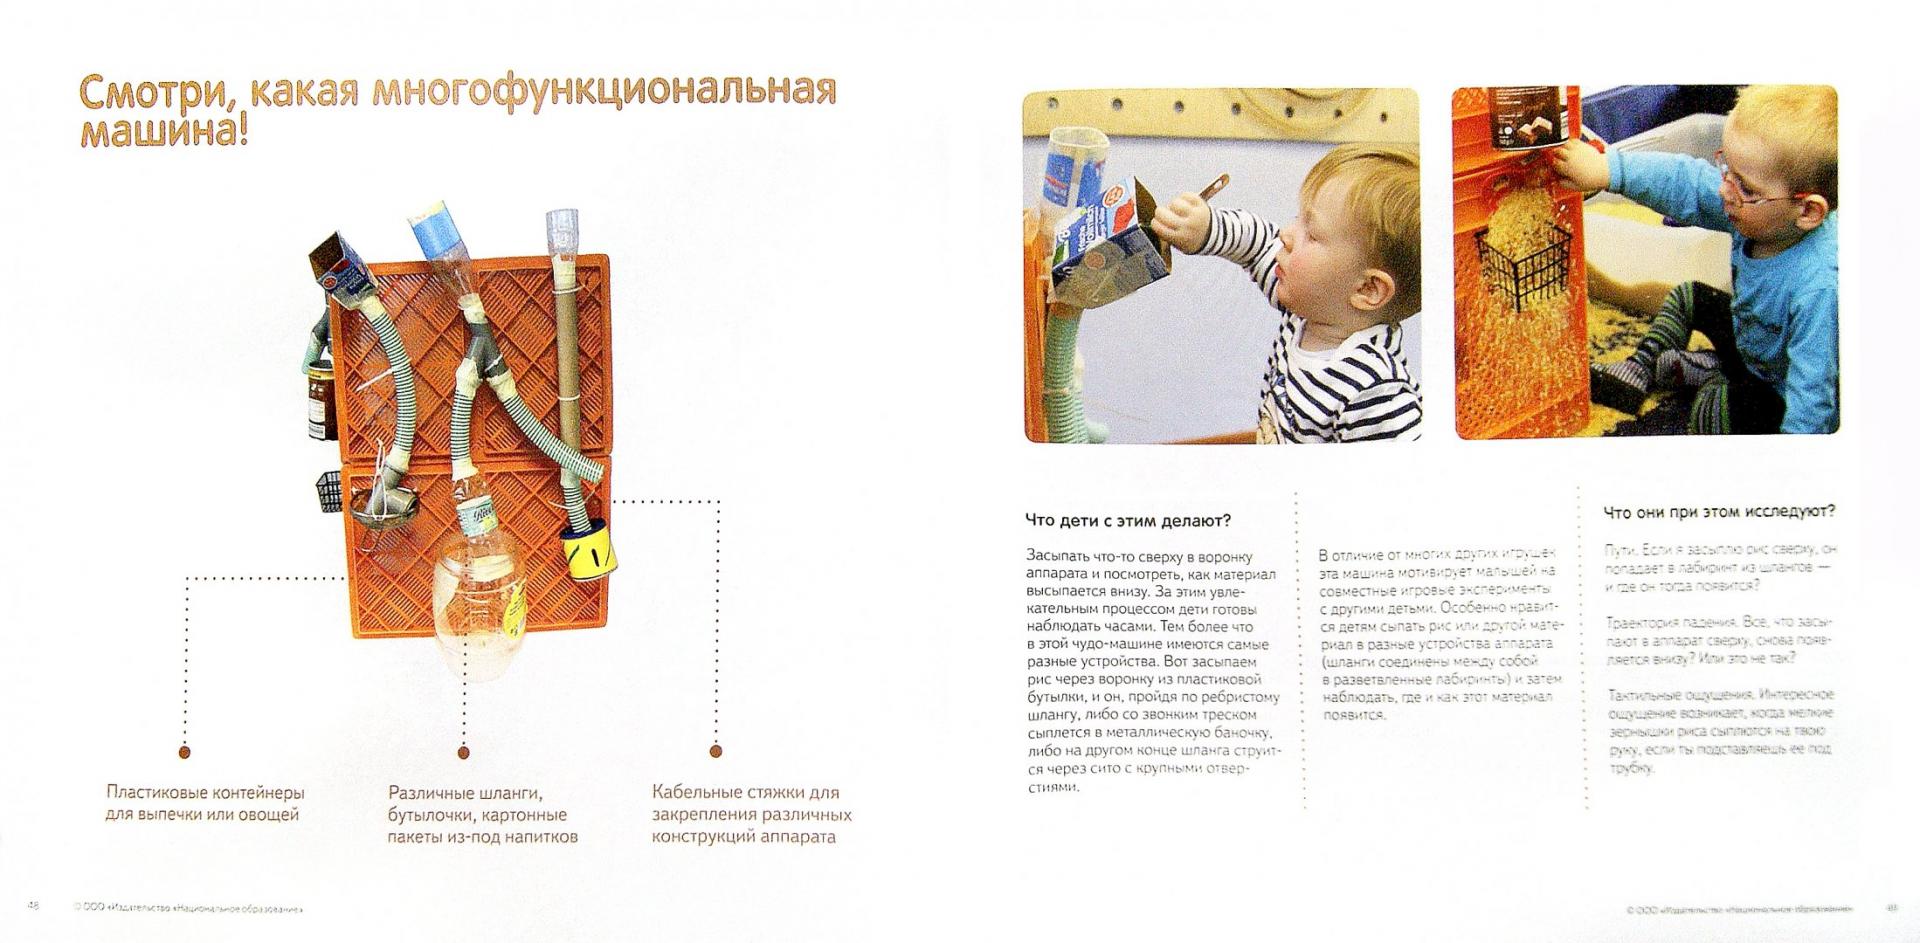 Иллюстрация 1 из 16 для 33 блестящие идеи для детского сада. Делаем игрушки своими руками. ФГОС ДО - Бостельман, Финк | Лабиринт - книги. Источник: Лабиринт